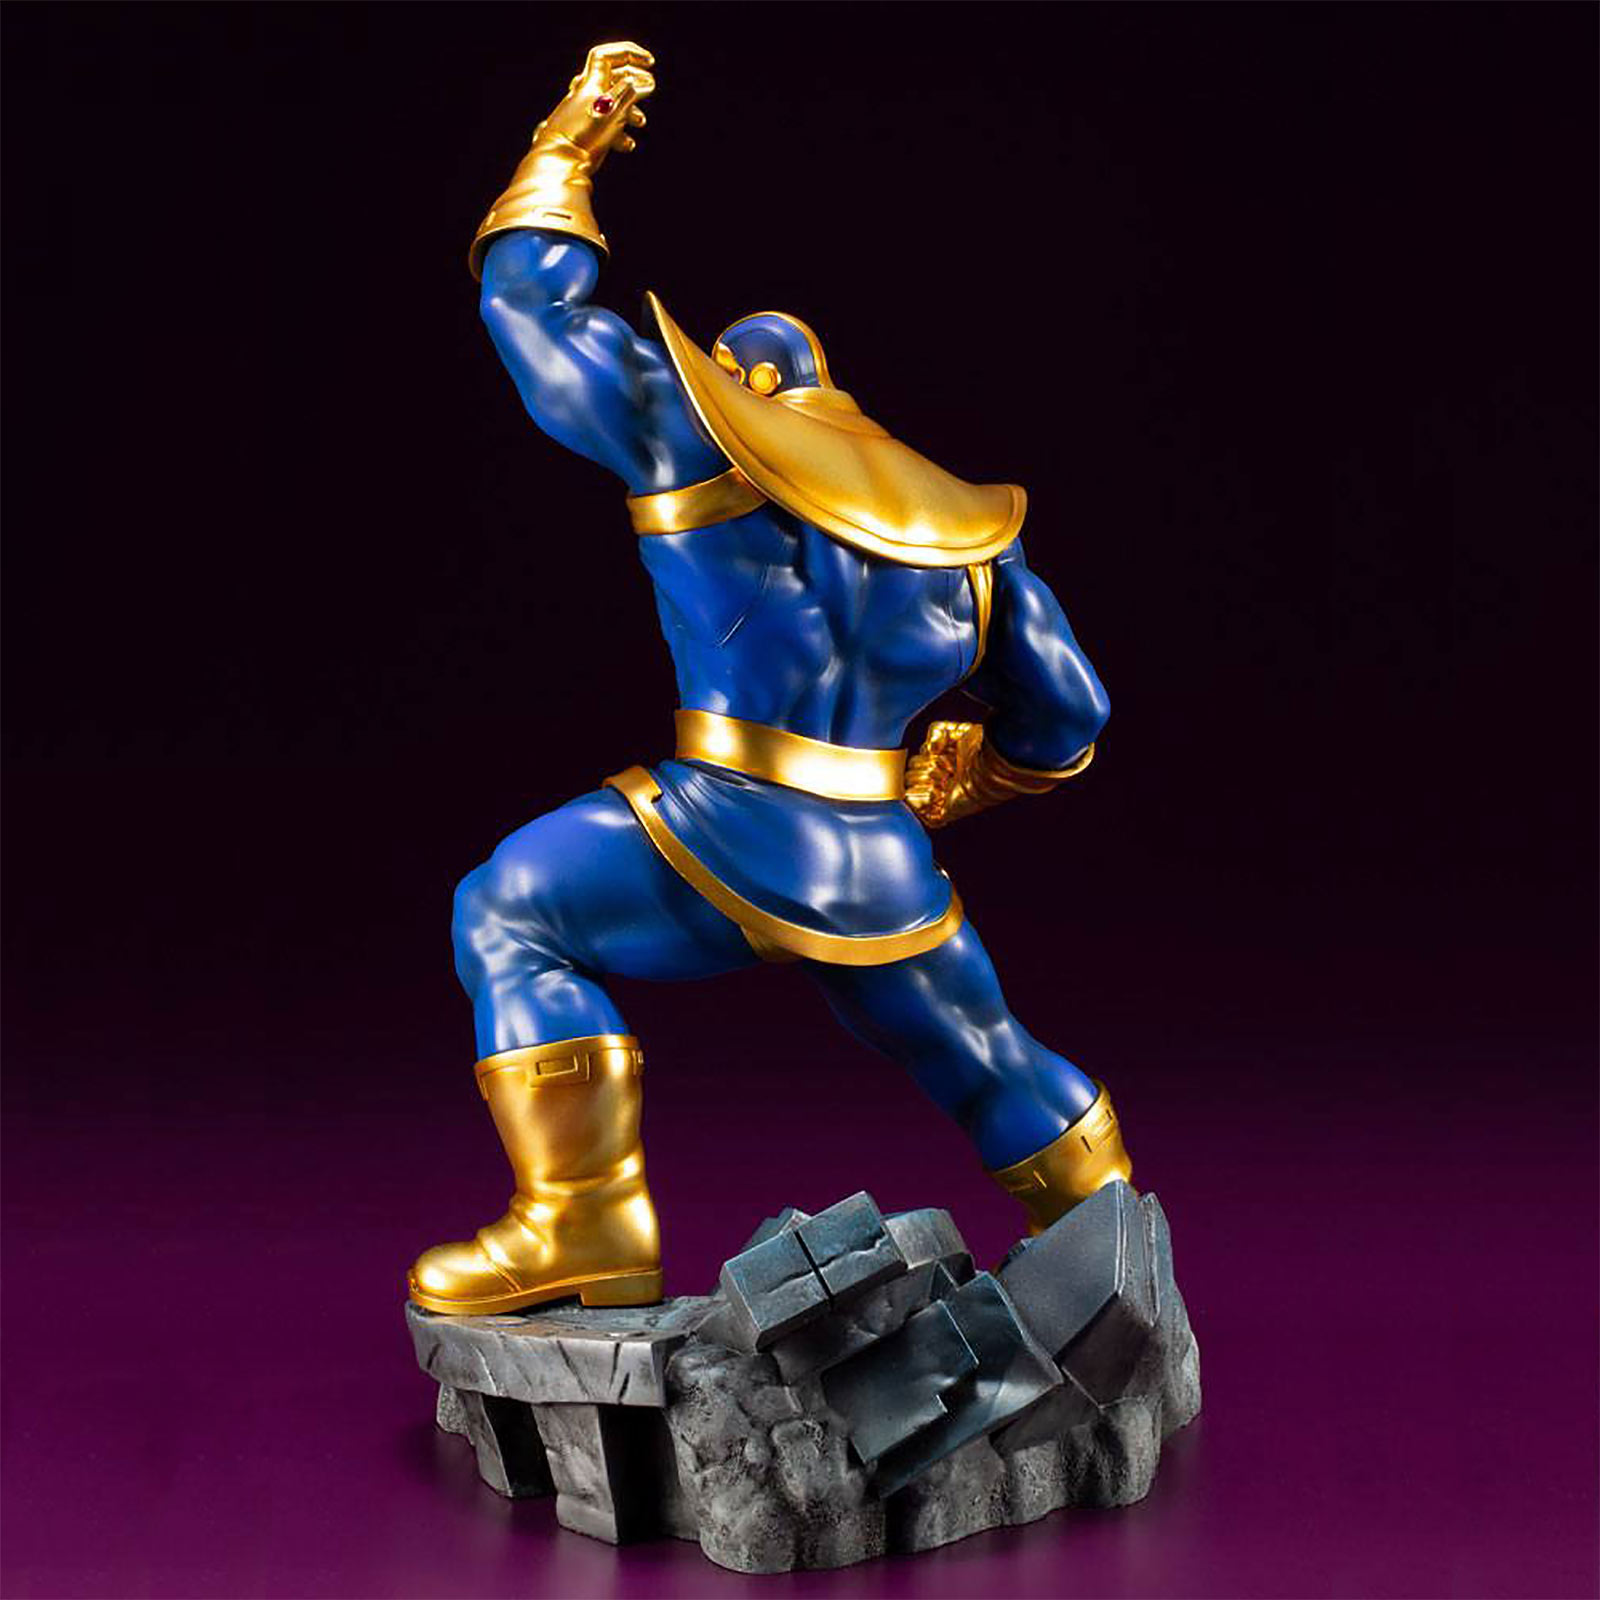 Thanos - Avengers verzamelbeeld 28 cm